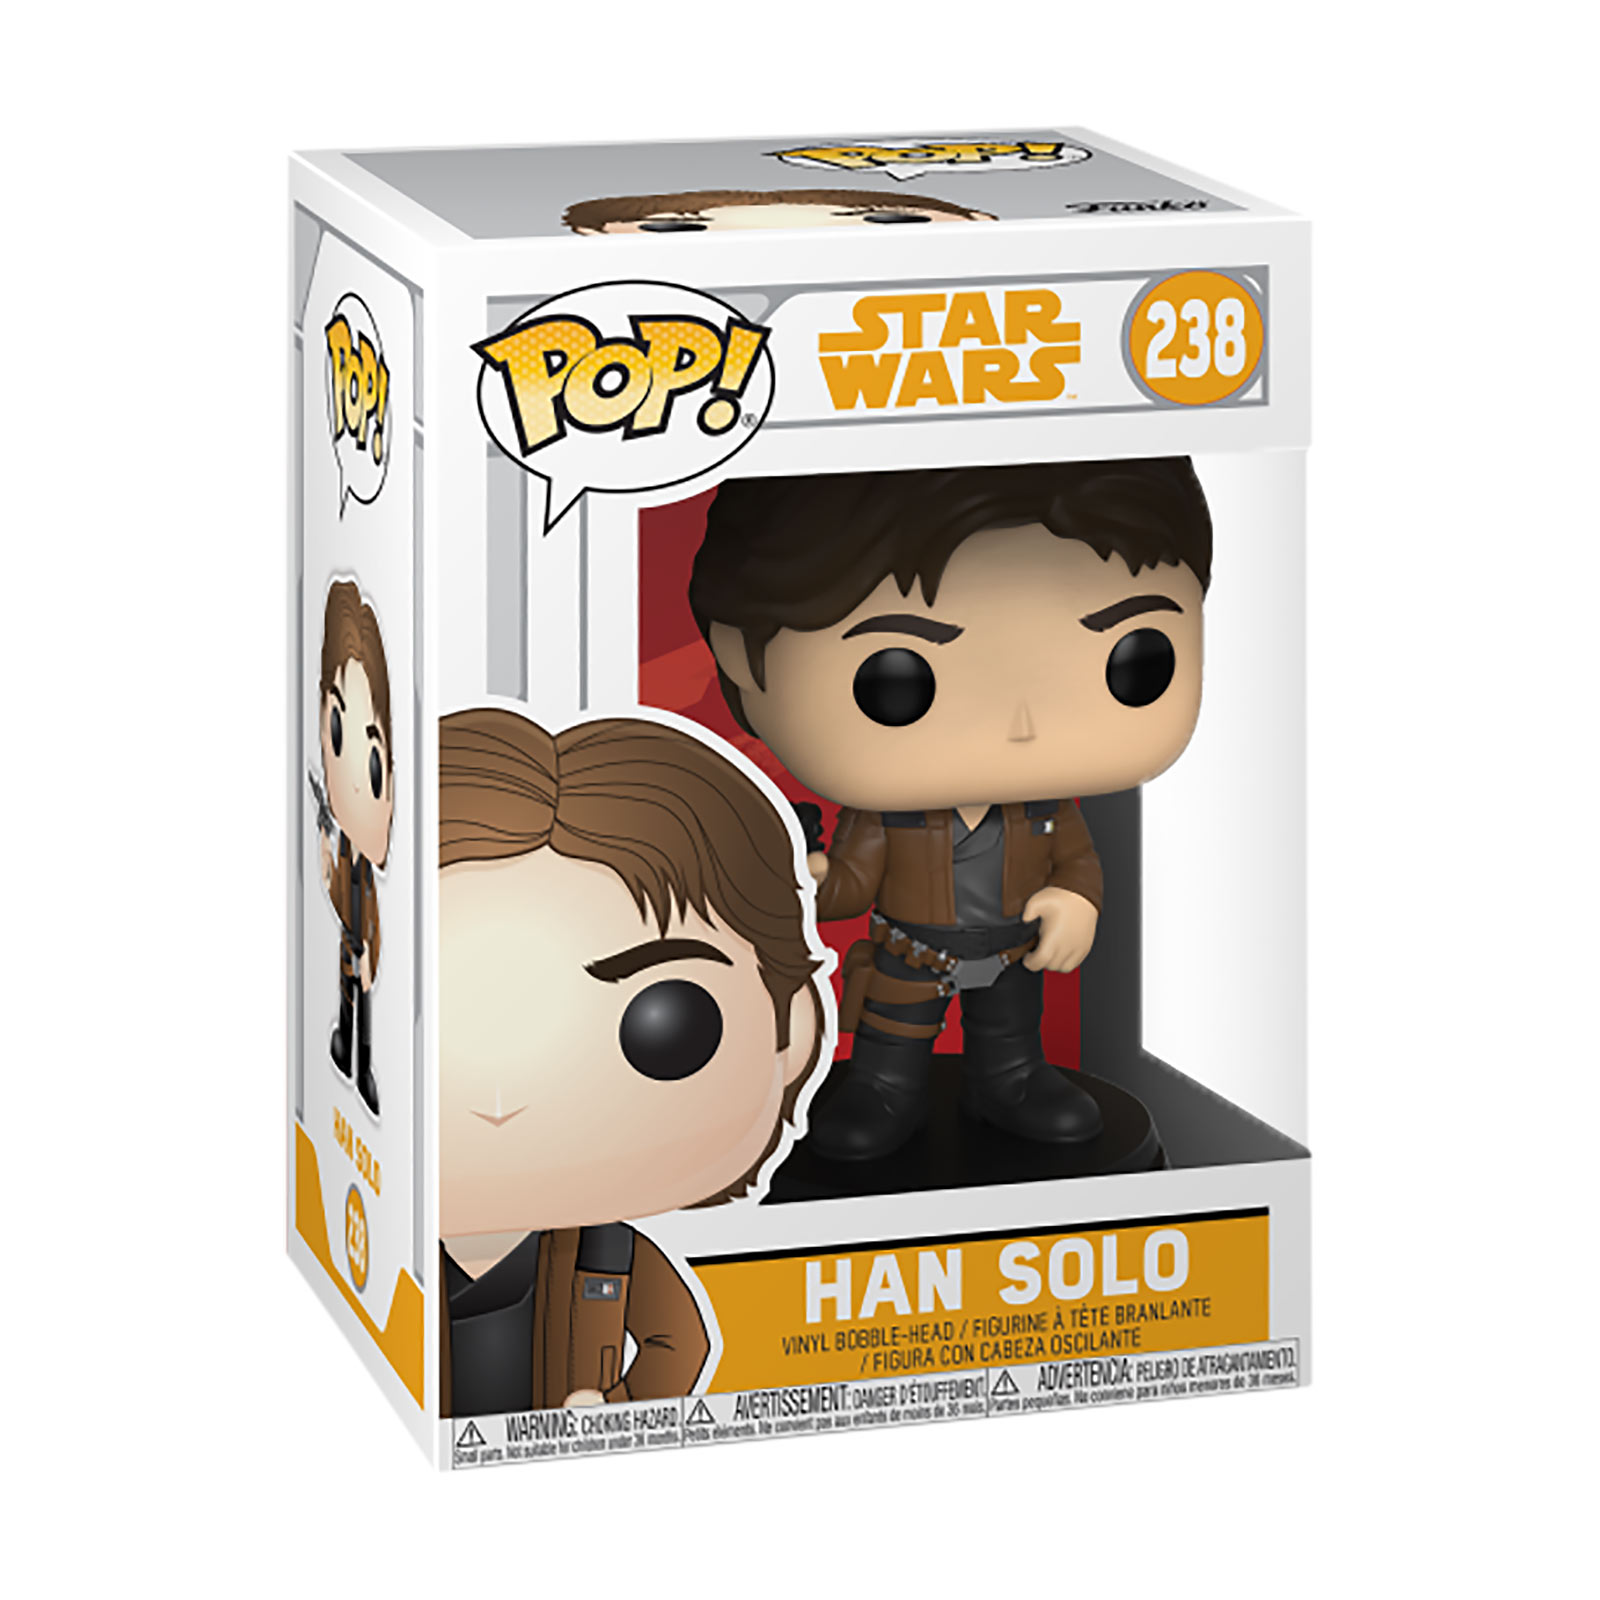 Star Wars - Han Solo Funko Pop bobblehead figure